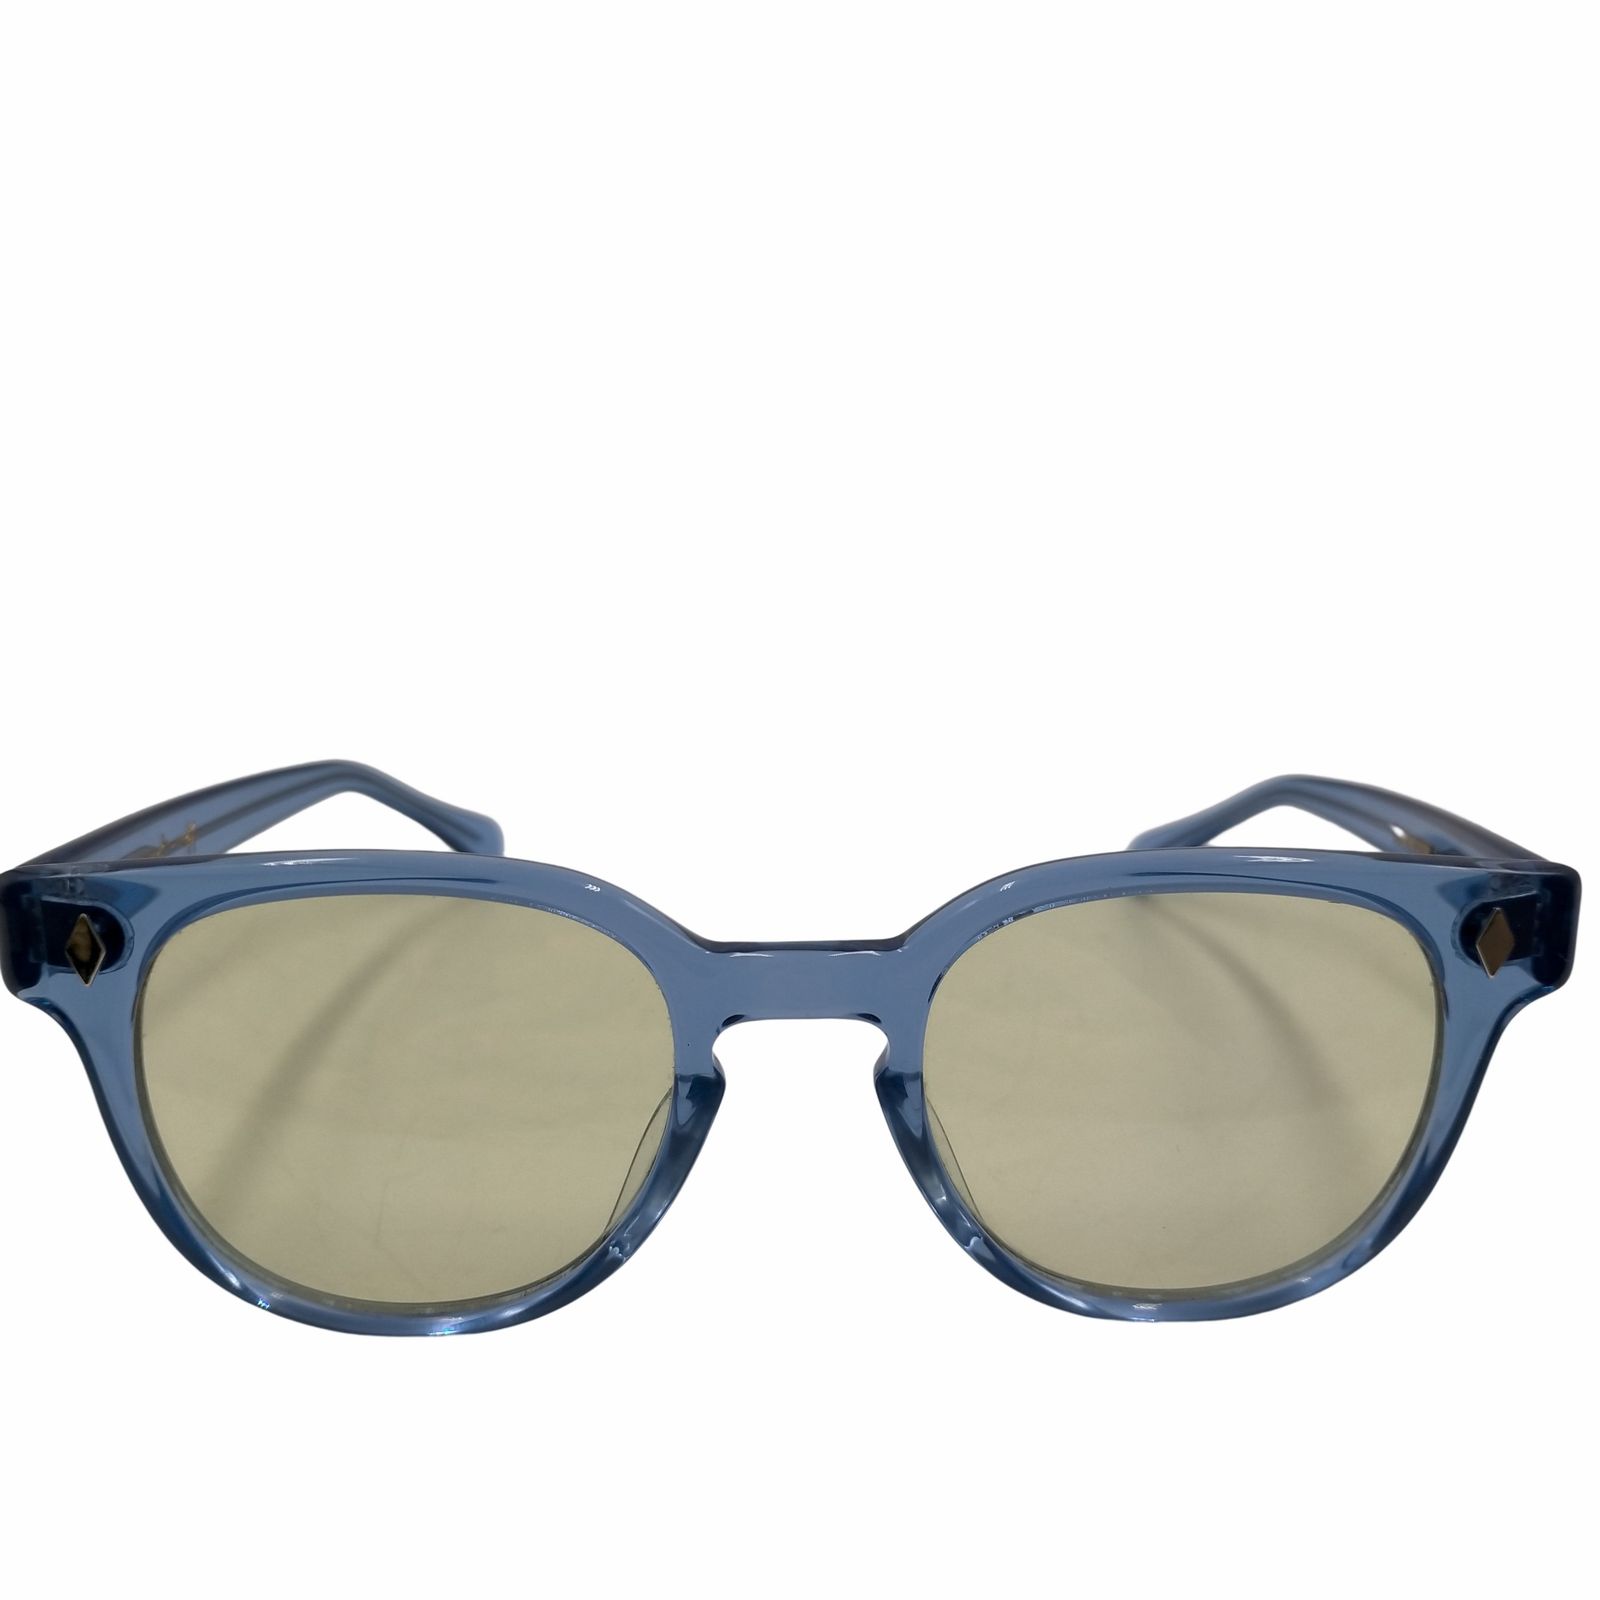 USED(ユーズドフルギ) メンズ ファッション雑貨 眼鏡・サングラス - サングラス/メガネ